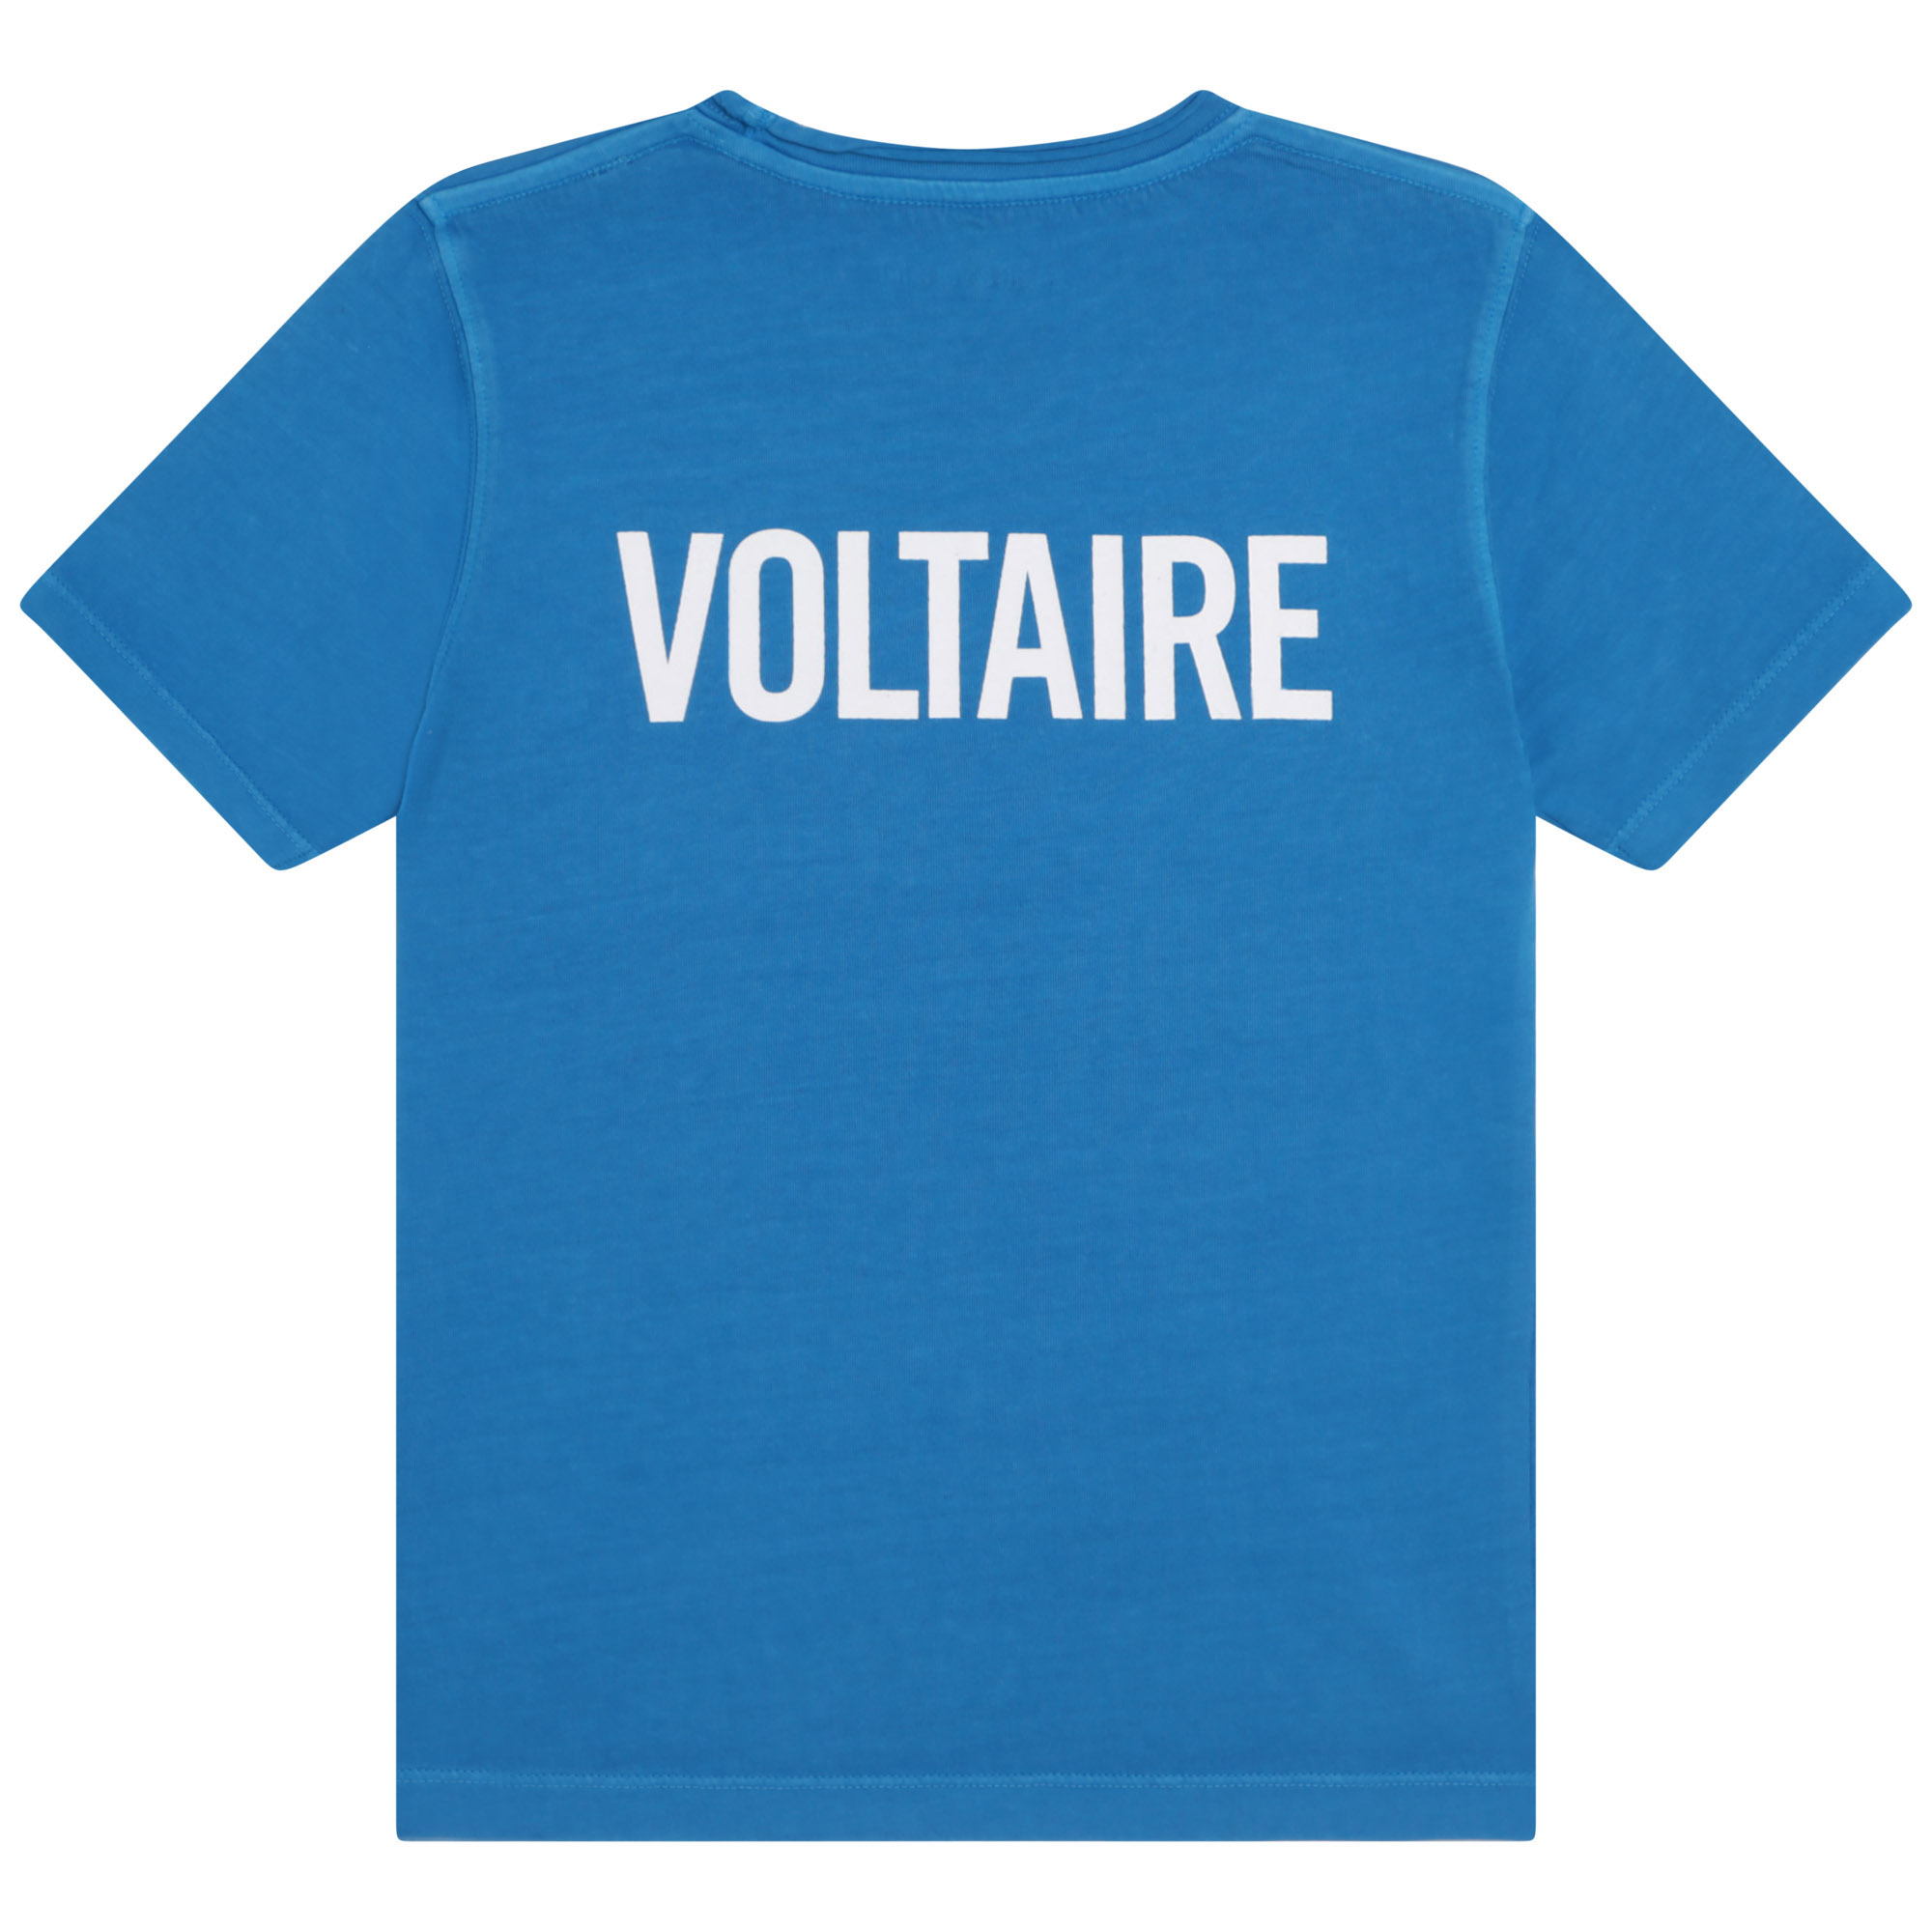 T-shirt imprimé logo ZADIG & VOLTAIRE pour GARCON